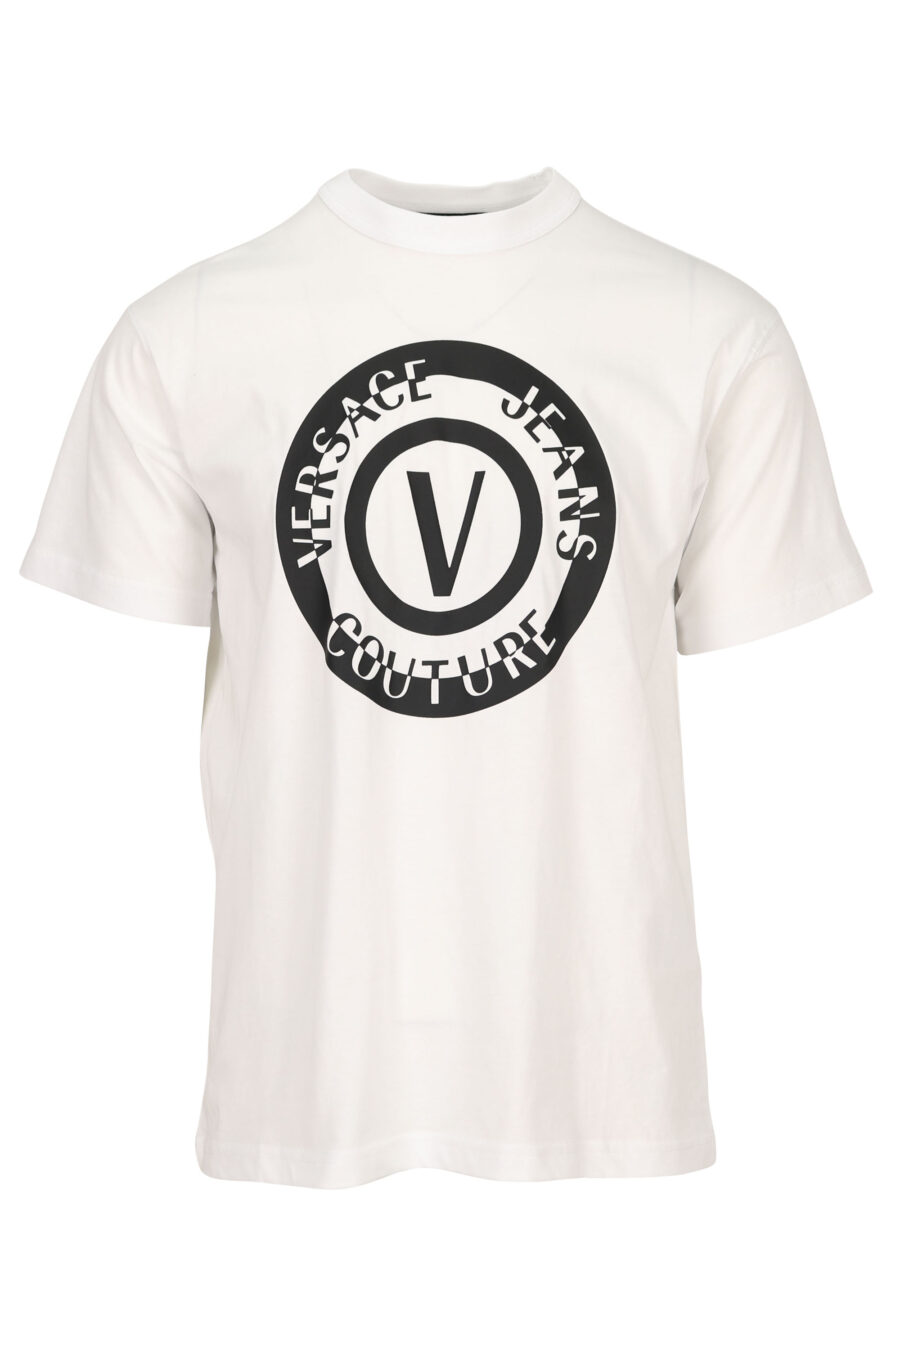 Camiseta blanca con maxilogo circular negro - 8052019580242